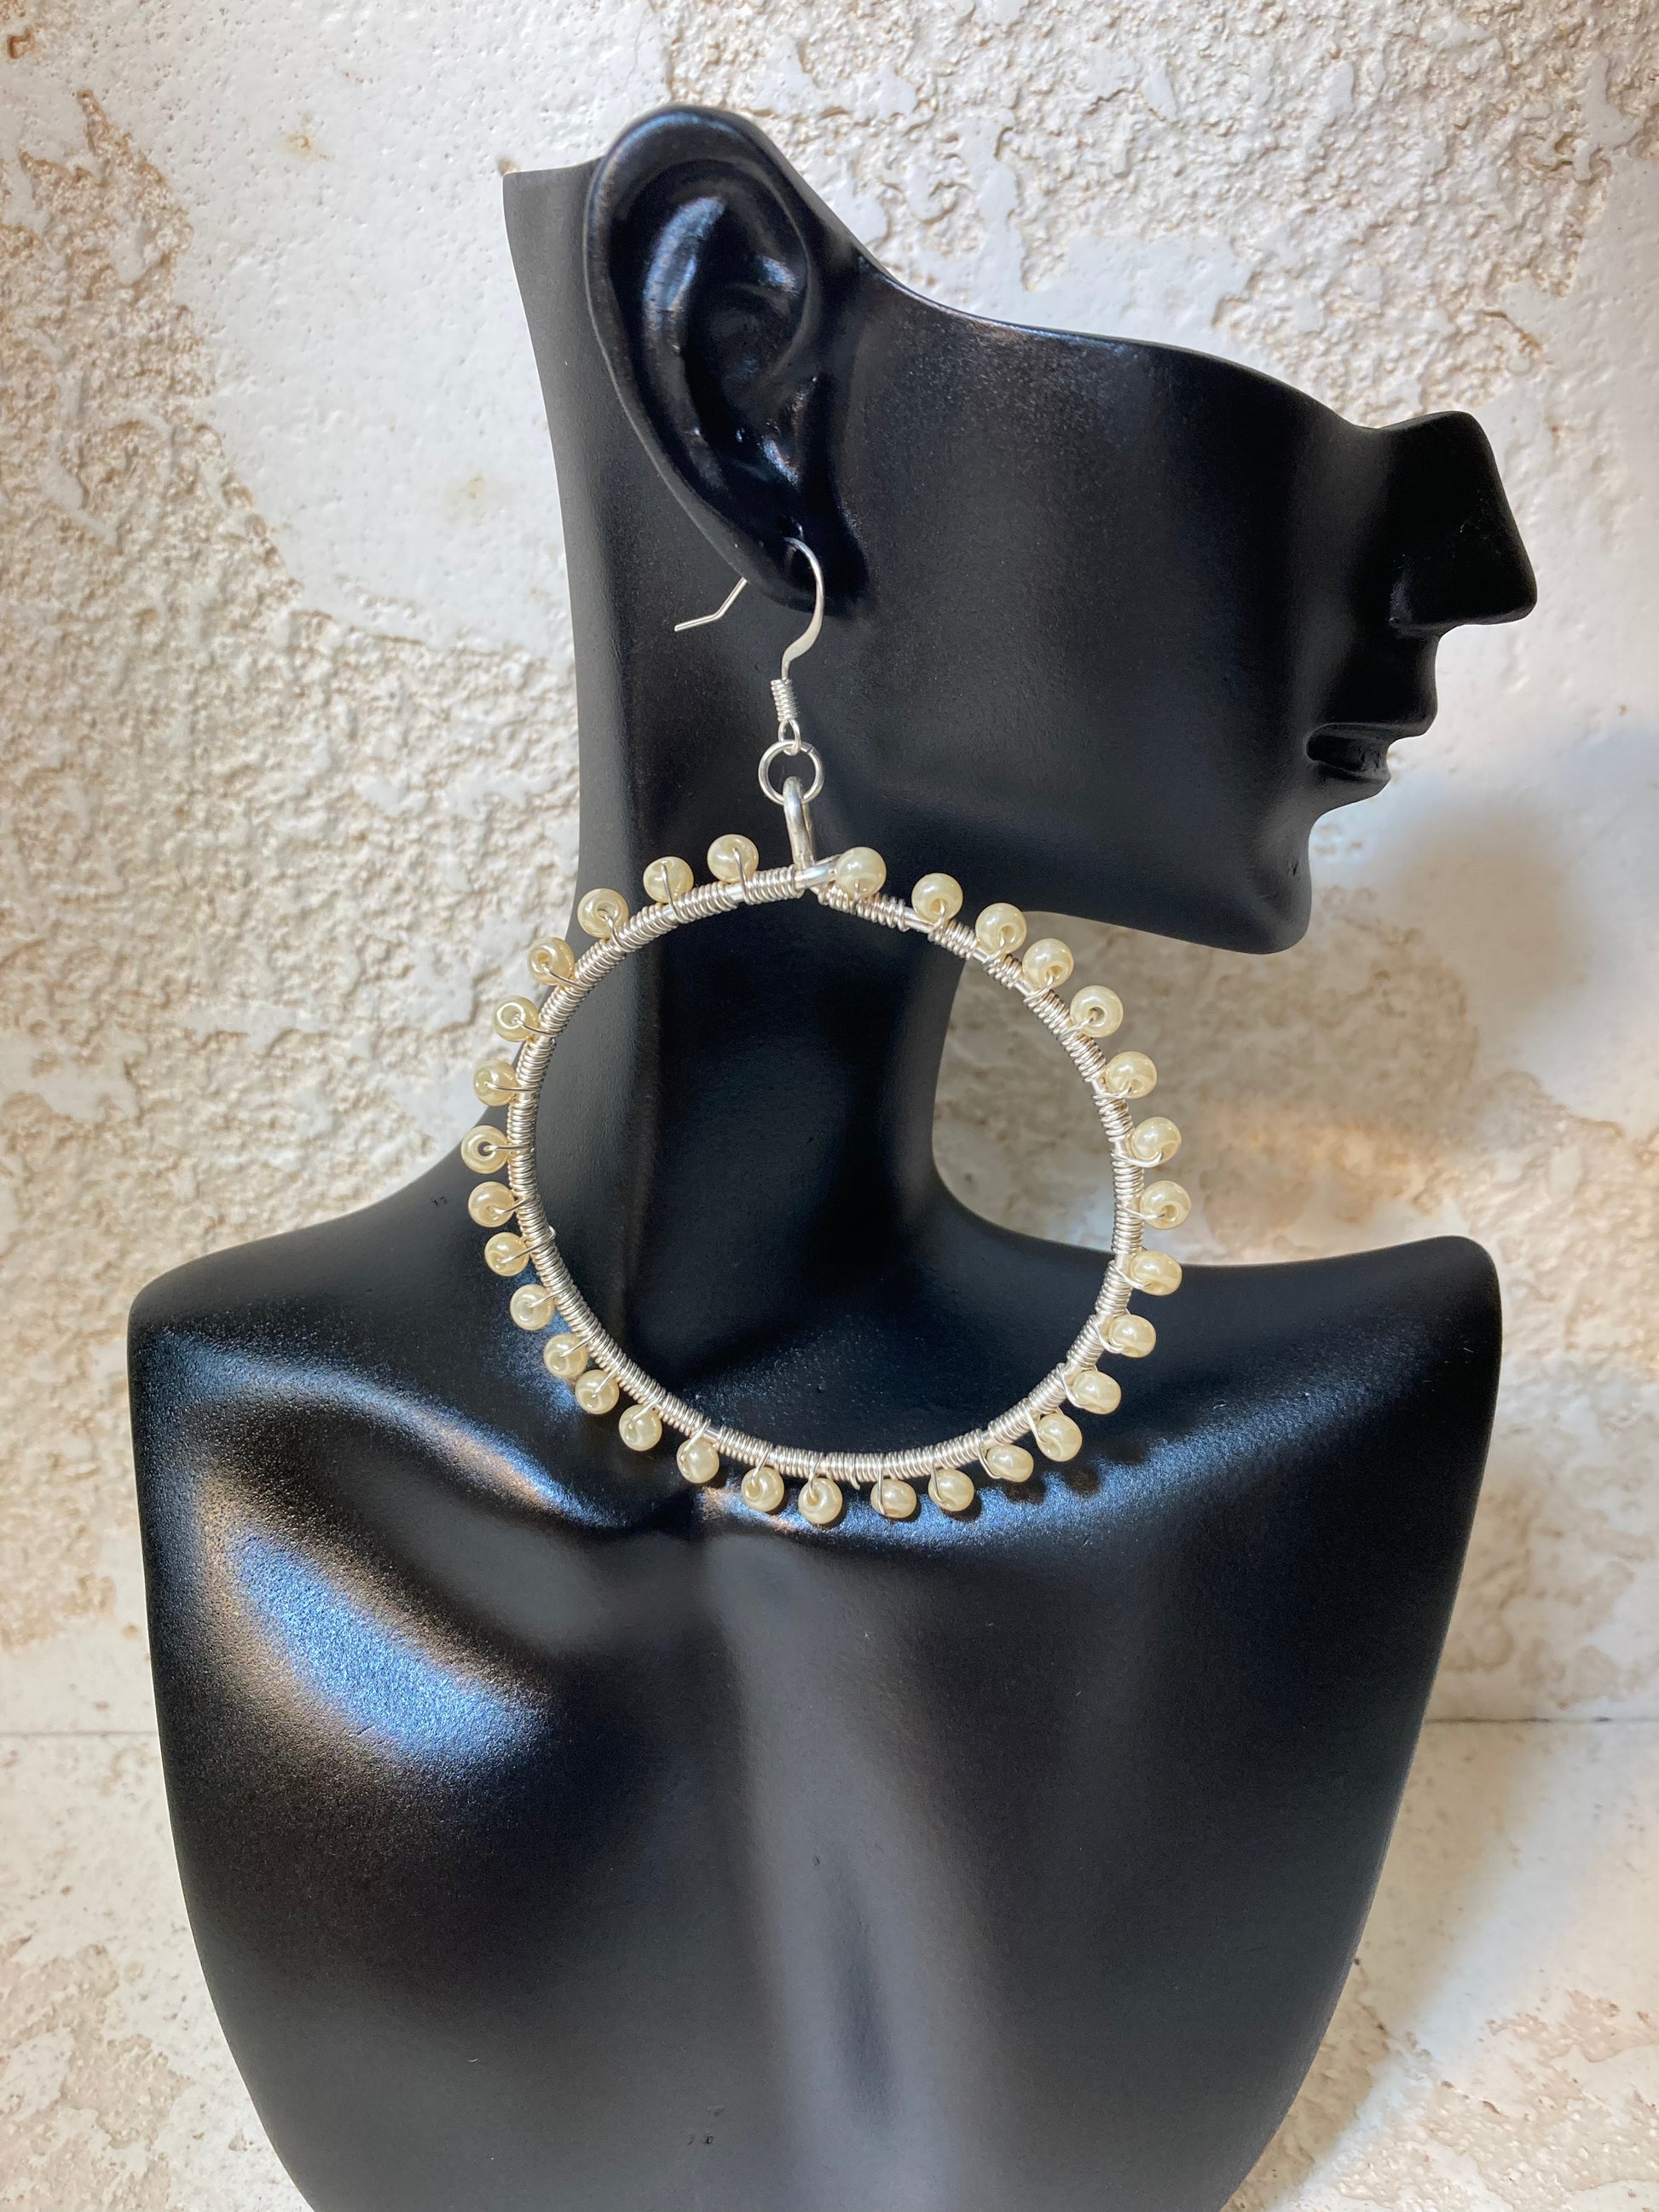 Beaded Hoops Earrings - Silver Plated Beaded Hoops Earrings